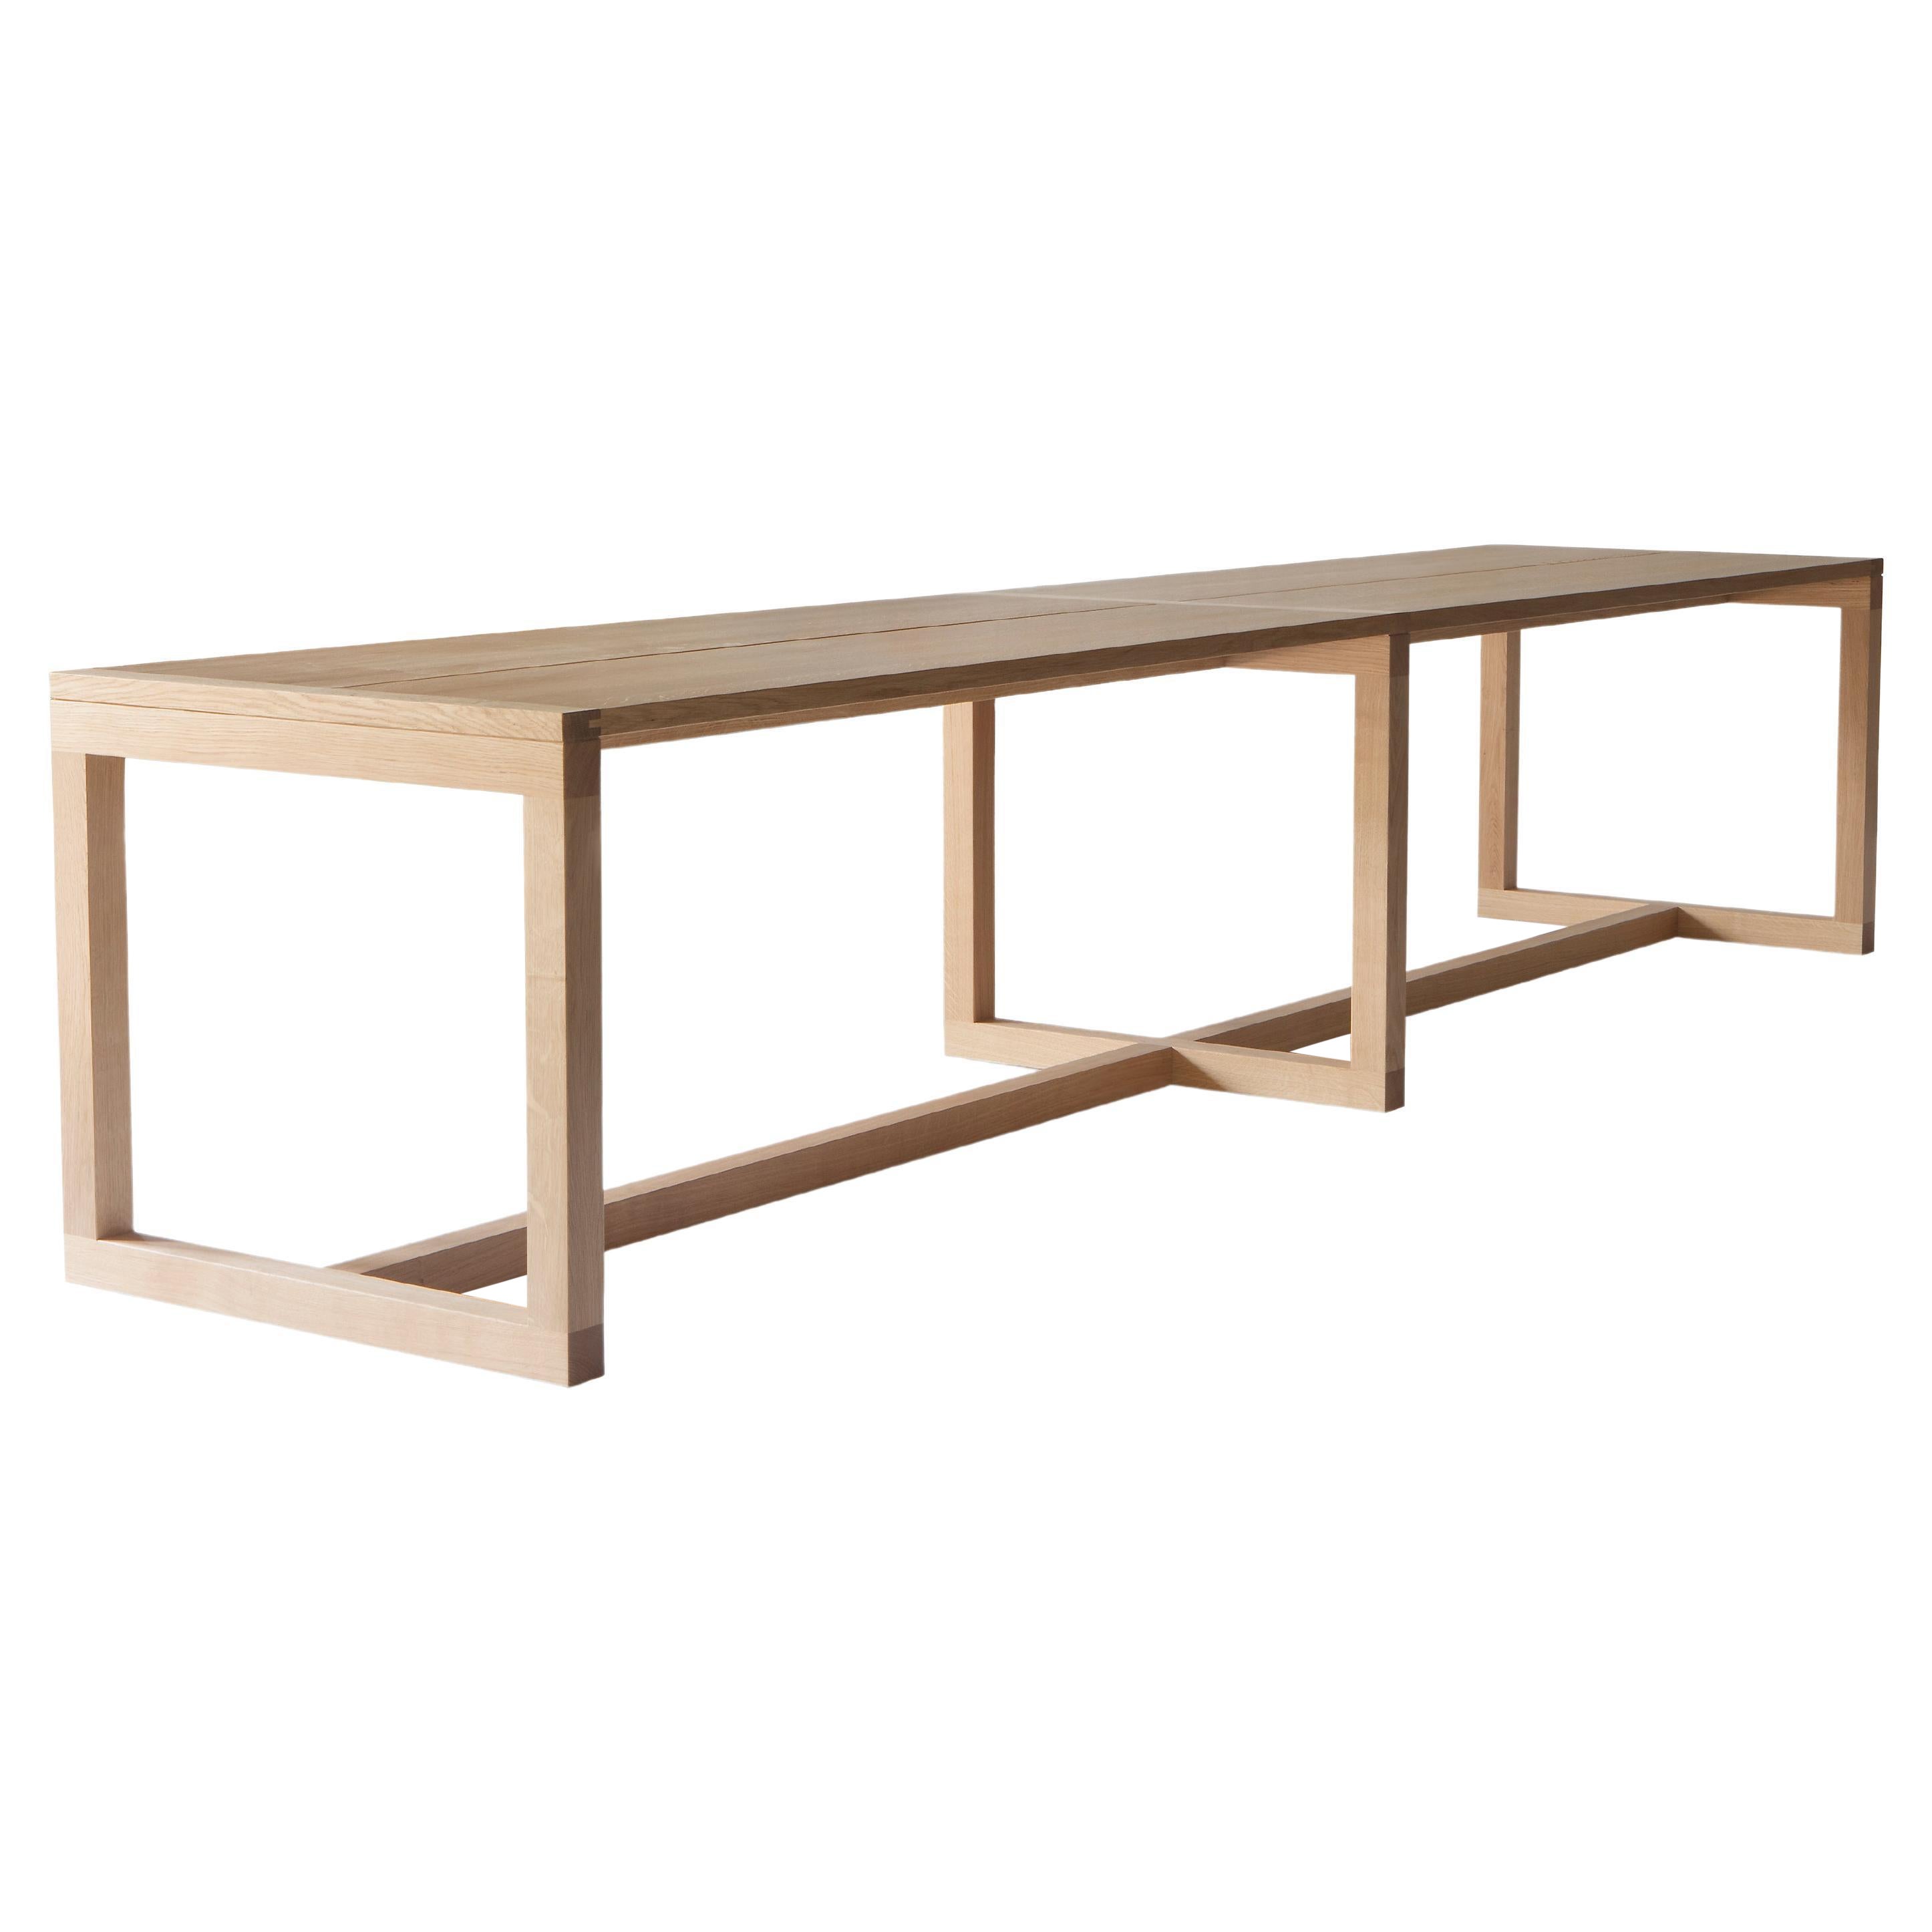 La première version de la table Frame a été conçue par l'architecte John Pawson pour sa propre ferme familiale dans les Cotswolds. La collection de tables Frame est un excellent exemple de minimalisme chaleureux, que Pawson maîtrise avec